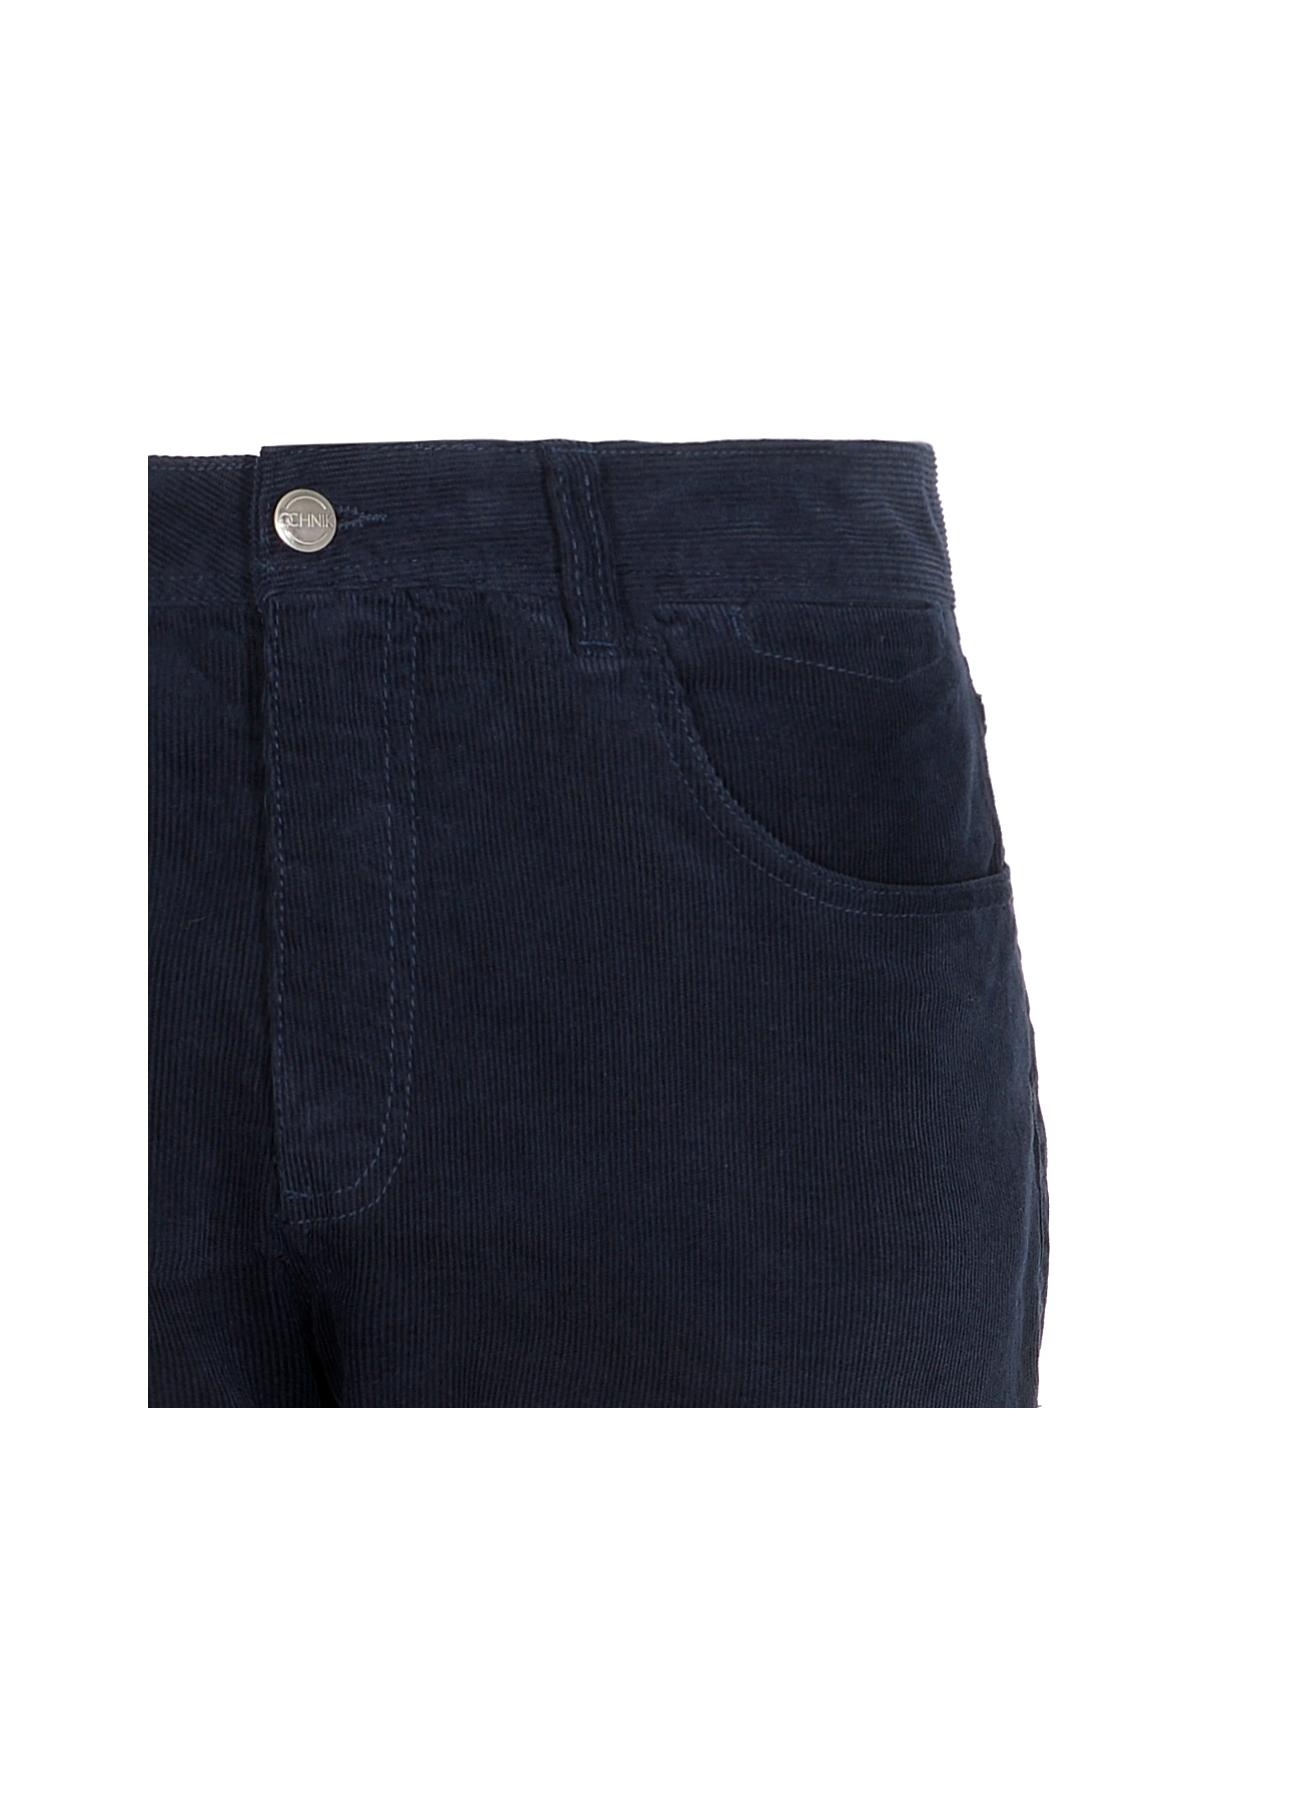 Spodnie męskie SPOMT-0068-69(Z21)